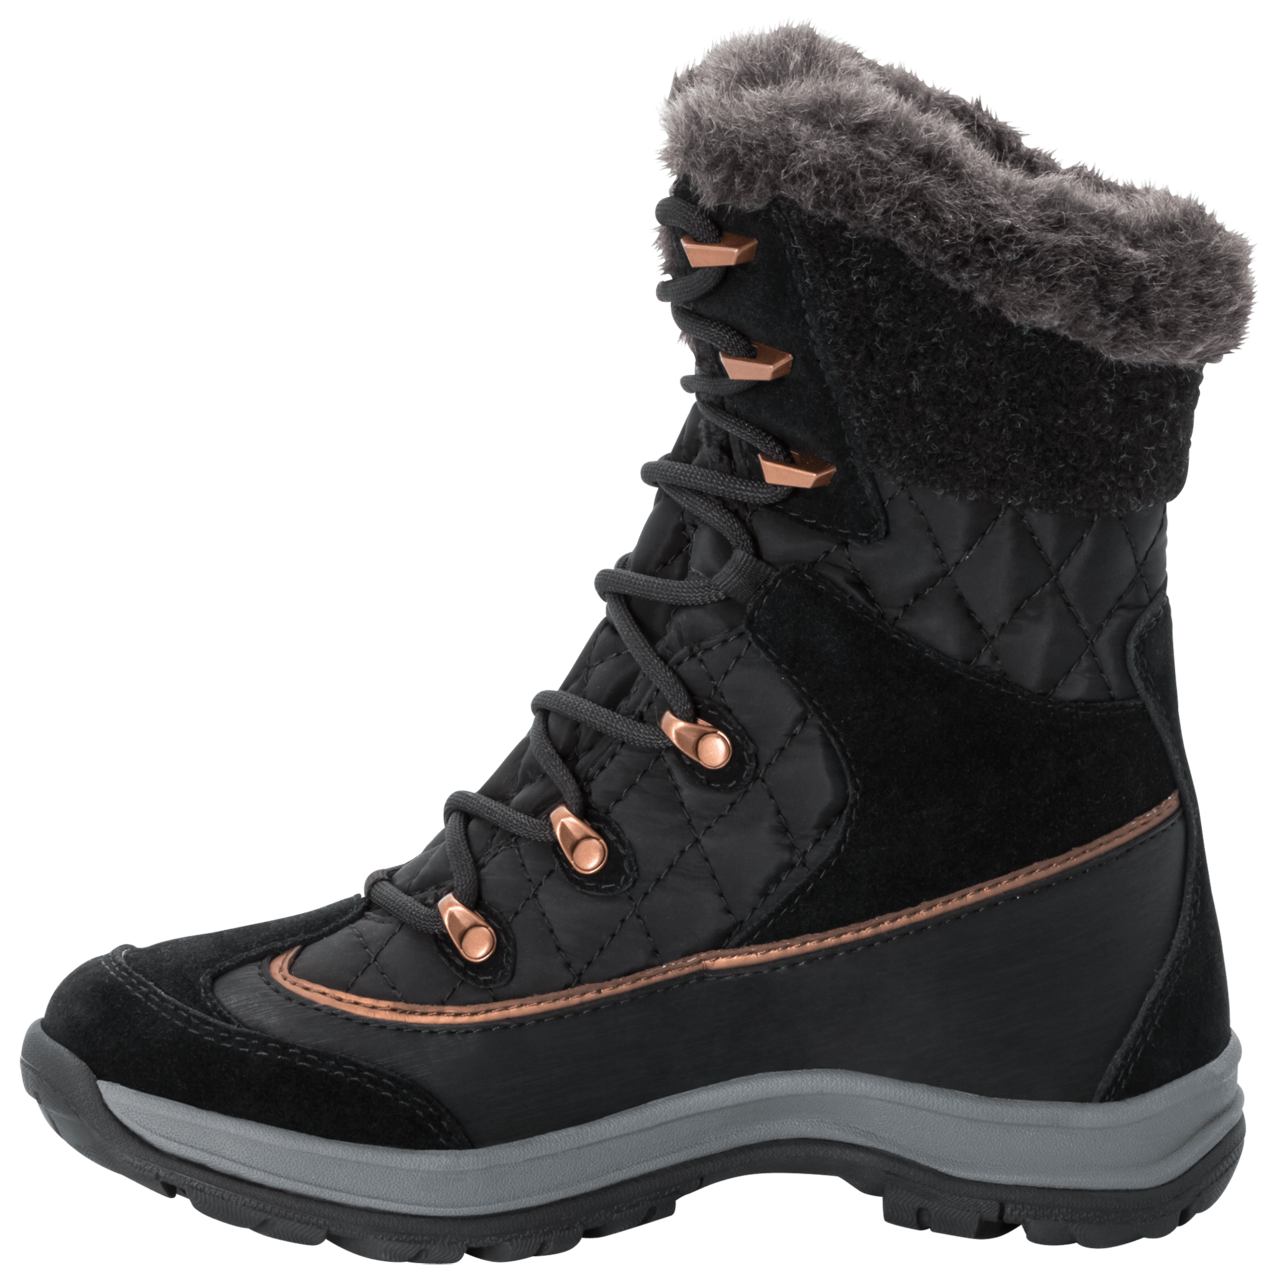 売れ筋商品 Texapore Aspen スポーツ用品 ジャックウルフスキン Wolfskin Jack High Grey Black Dark Boots Winter Tzq 510c144aj